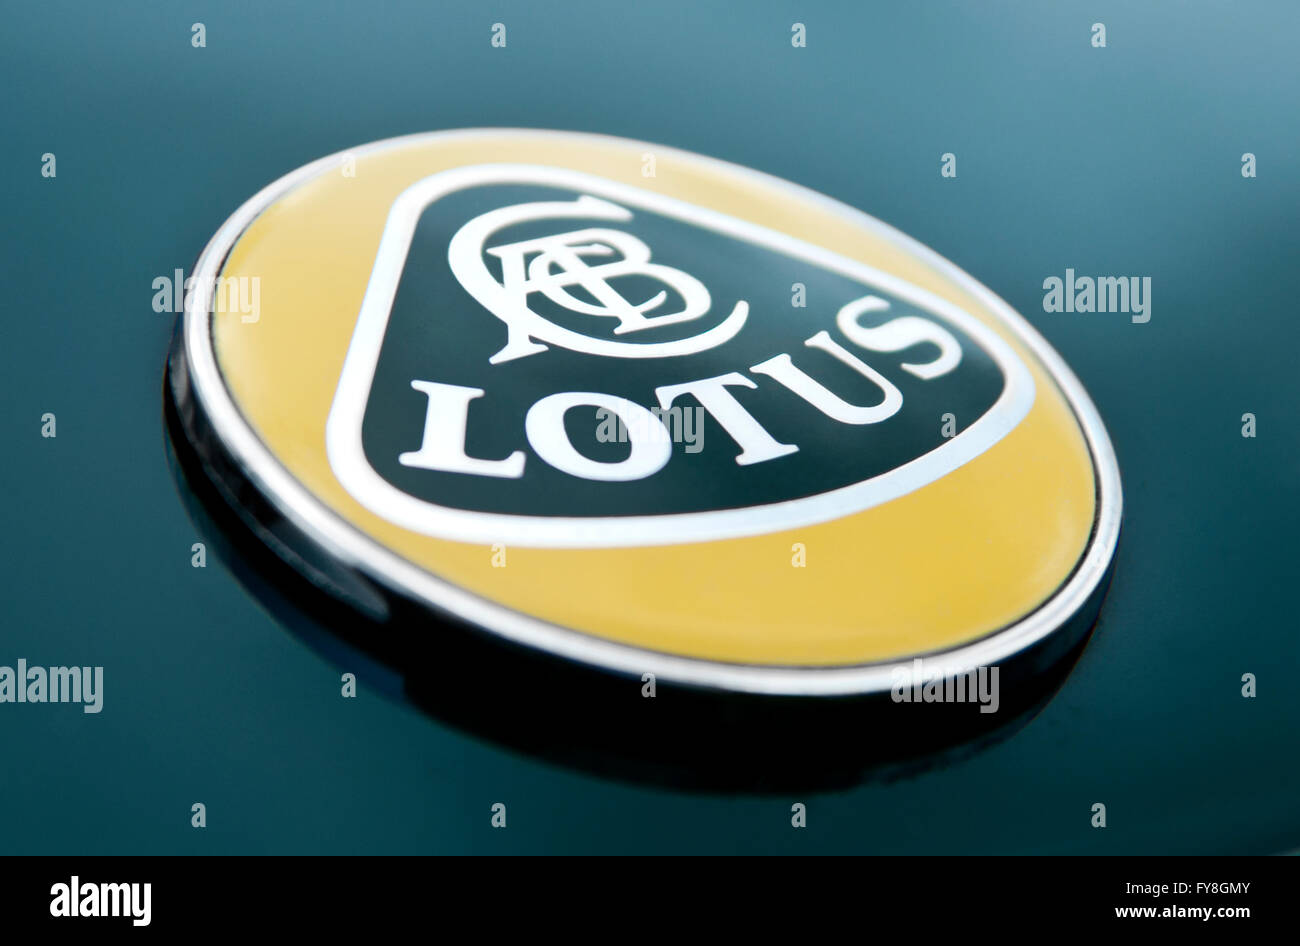 Lotus car logo Stock Photo